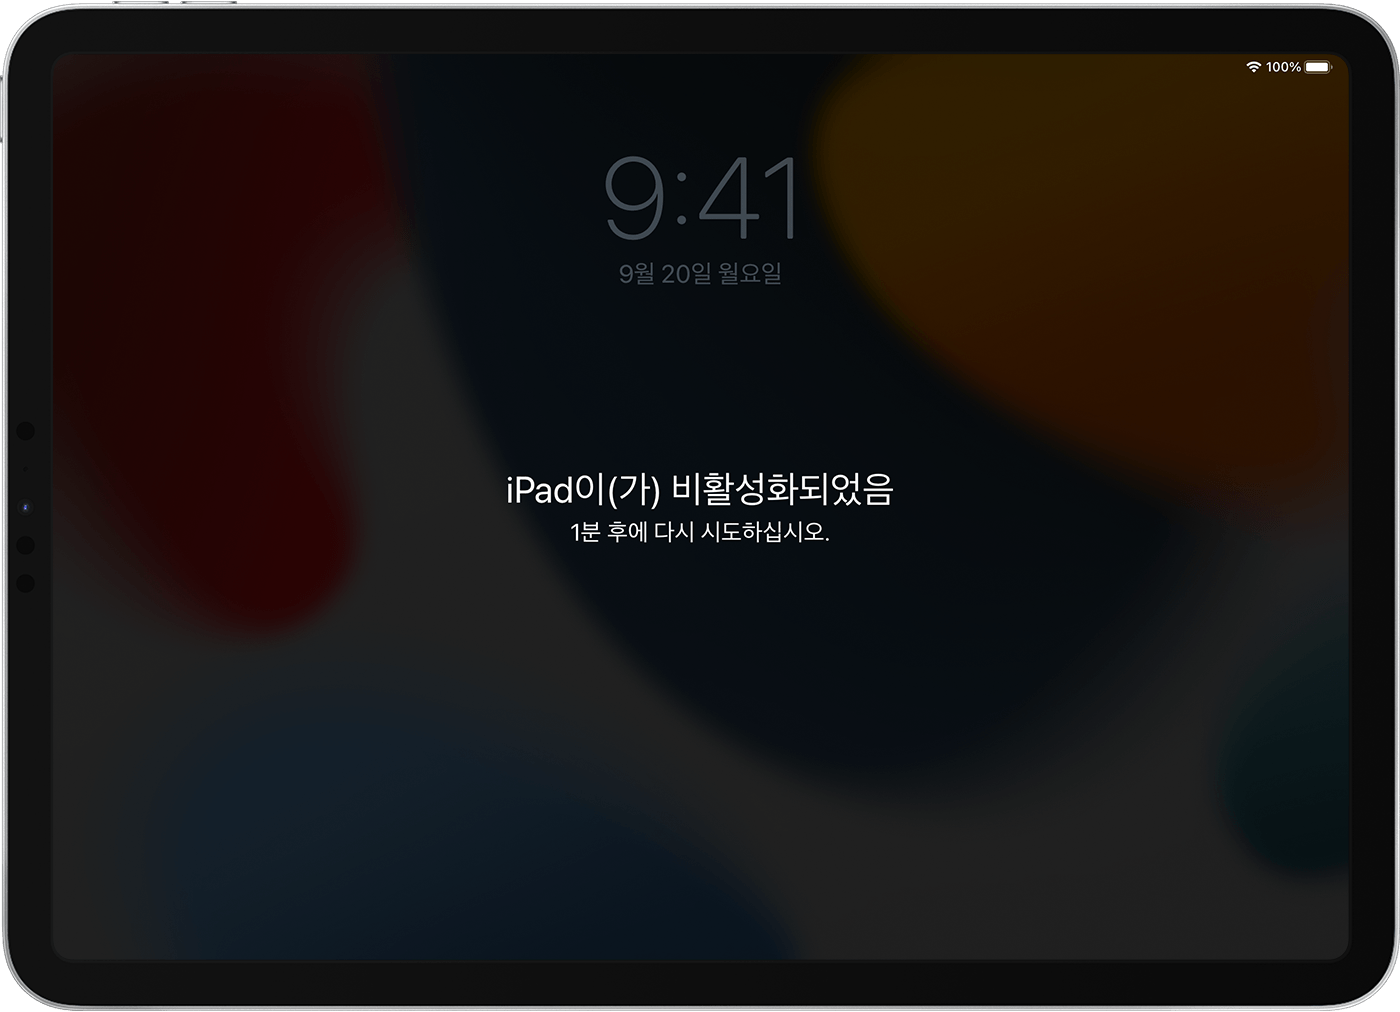 iPad이(가) 비활성화되었음 메시지가 표시된 iPad 화면.